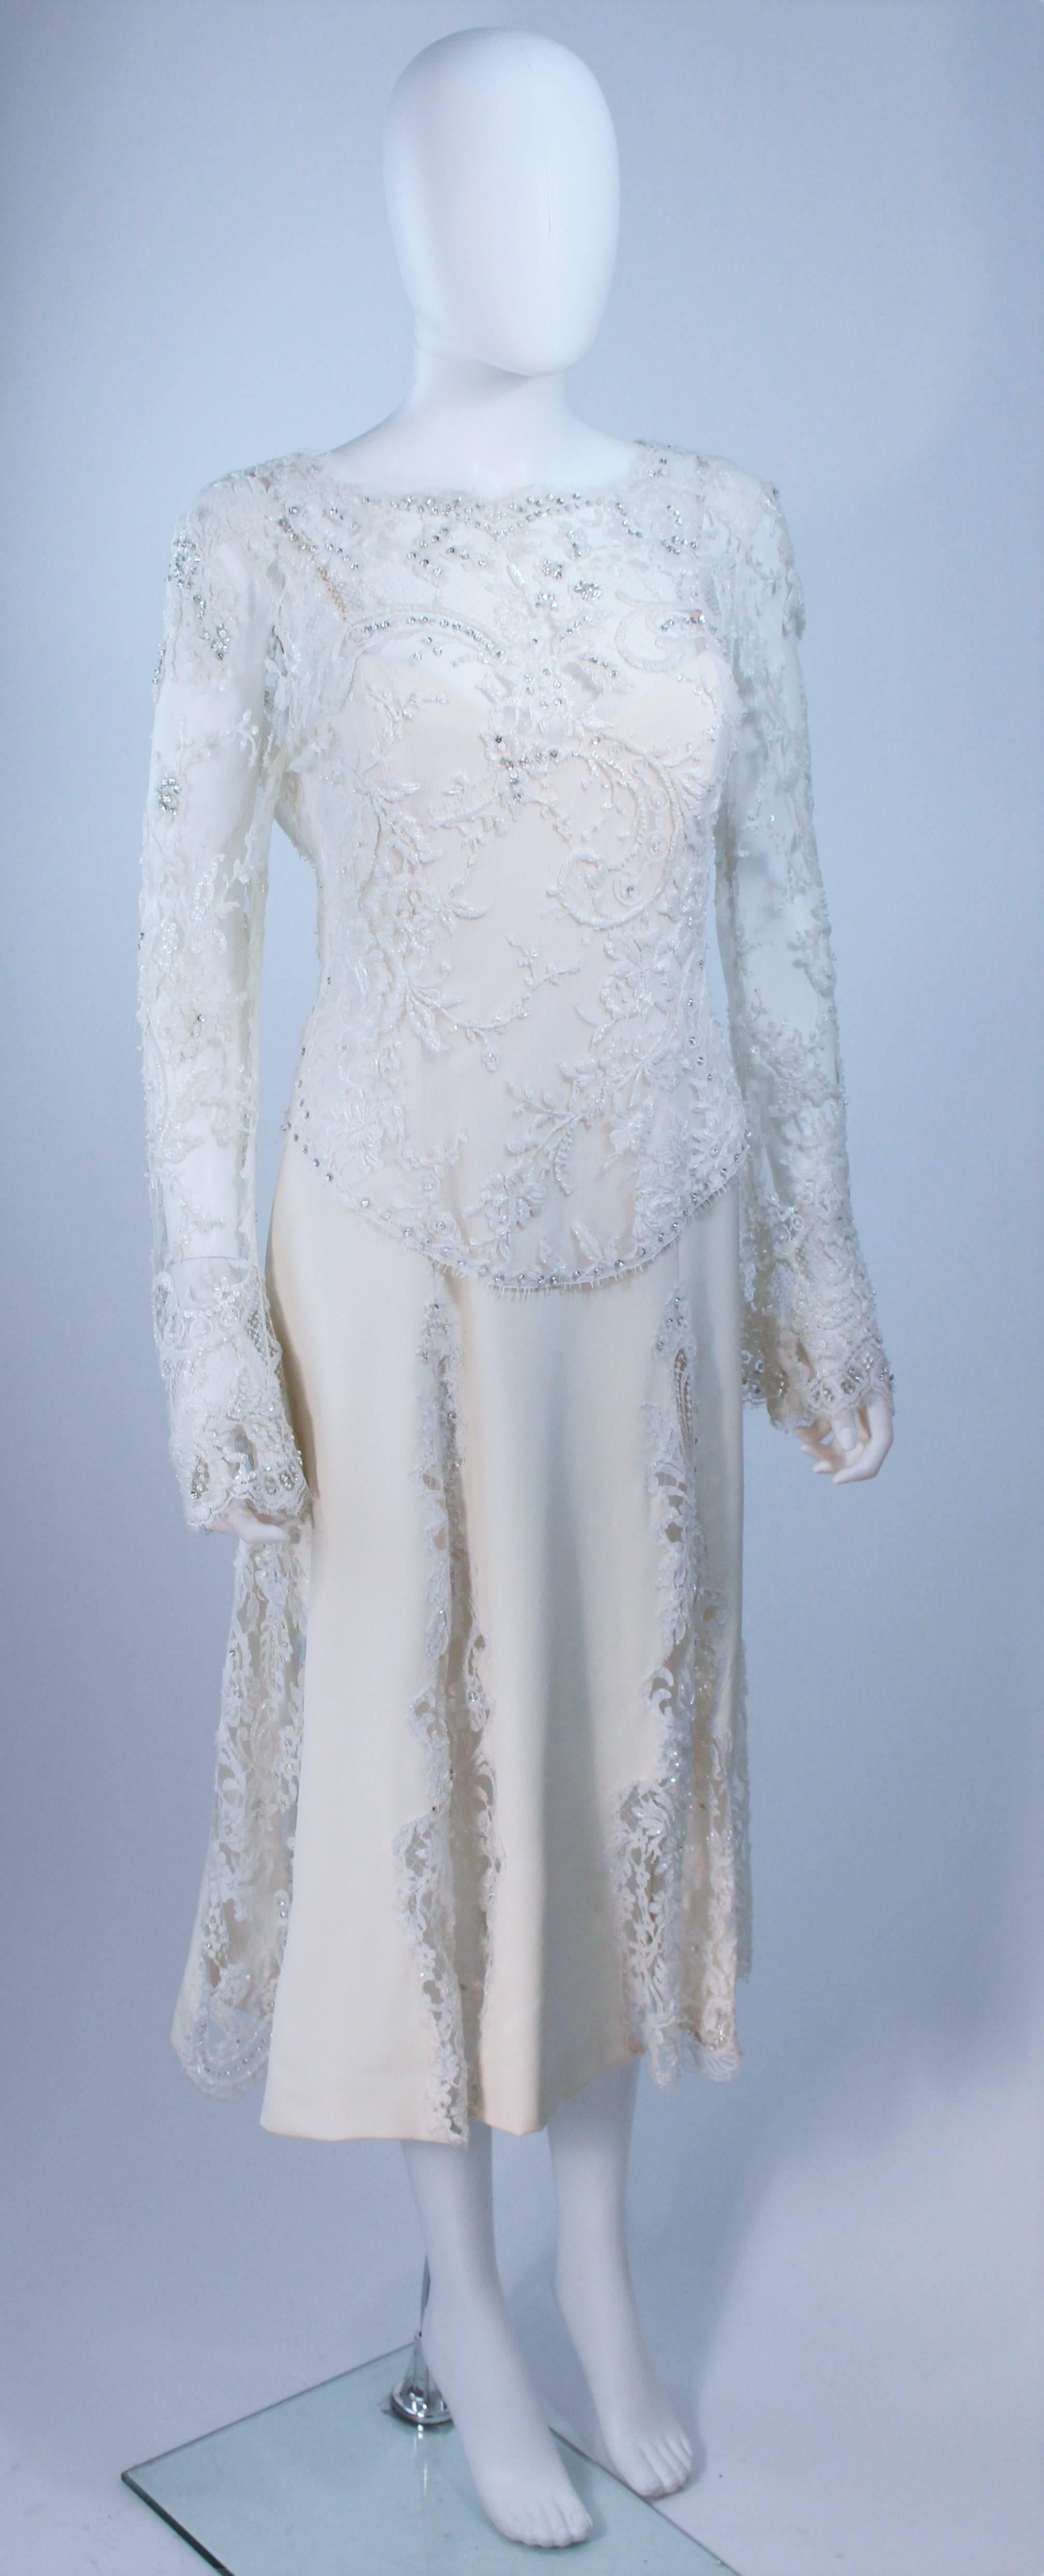 Gray FE ZANDI White Lace Silk Embellished Dress Size 6 For Sale